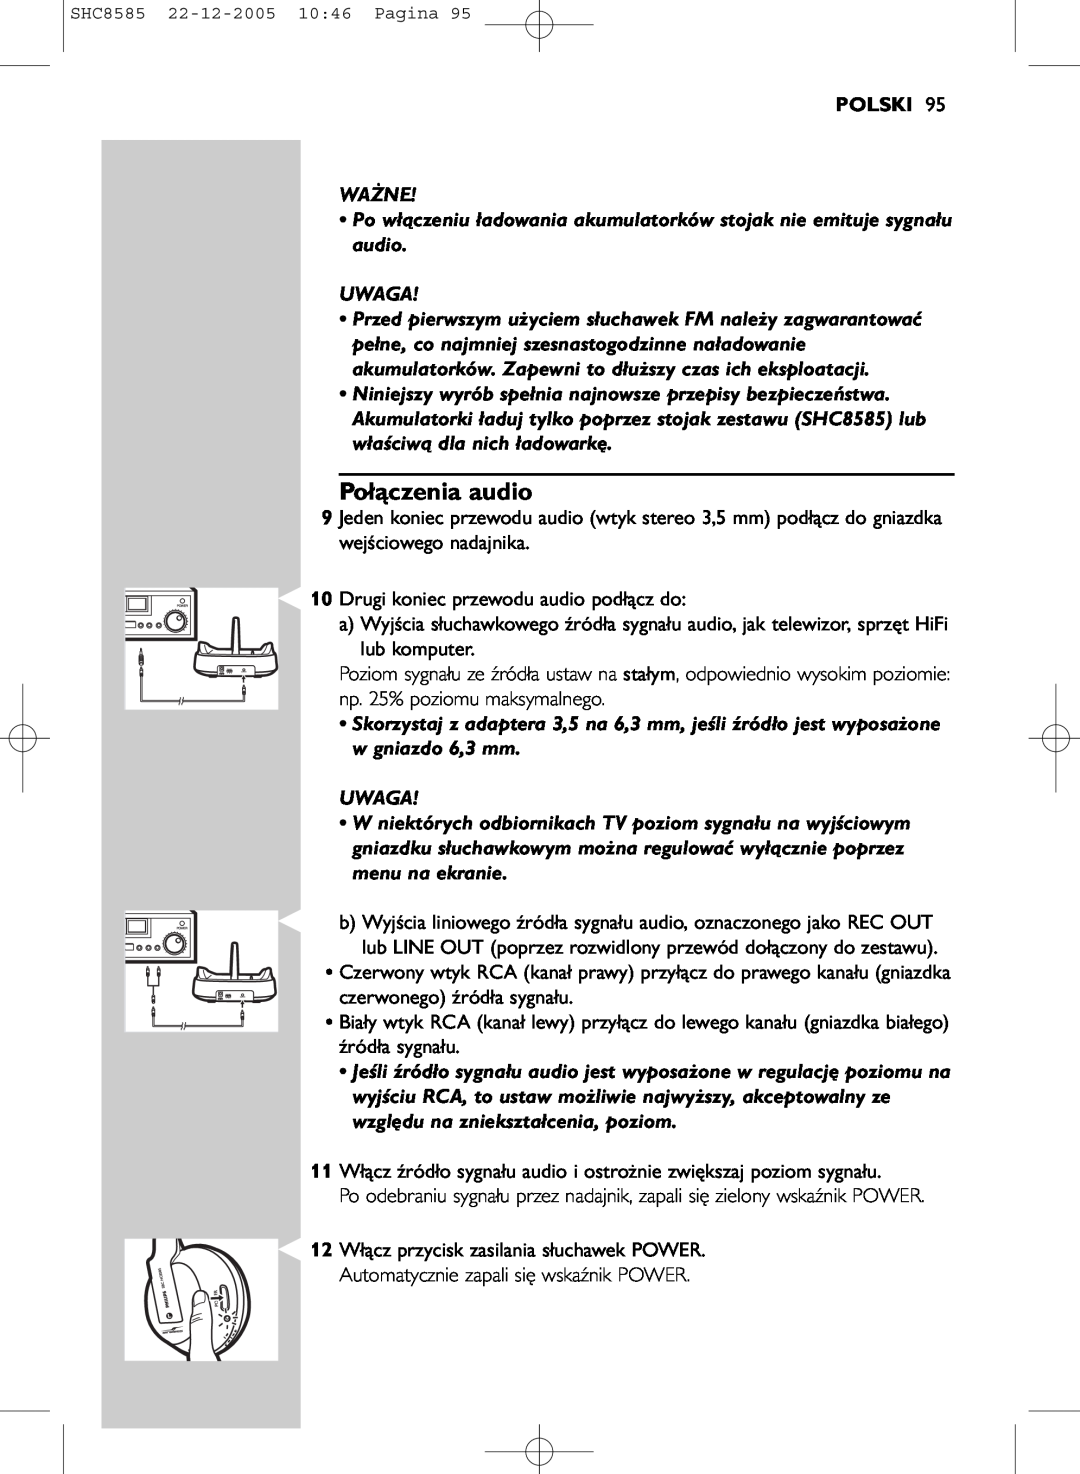 Philips SHC8585/05 manual Połączenia audio, Polski 